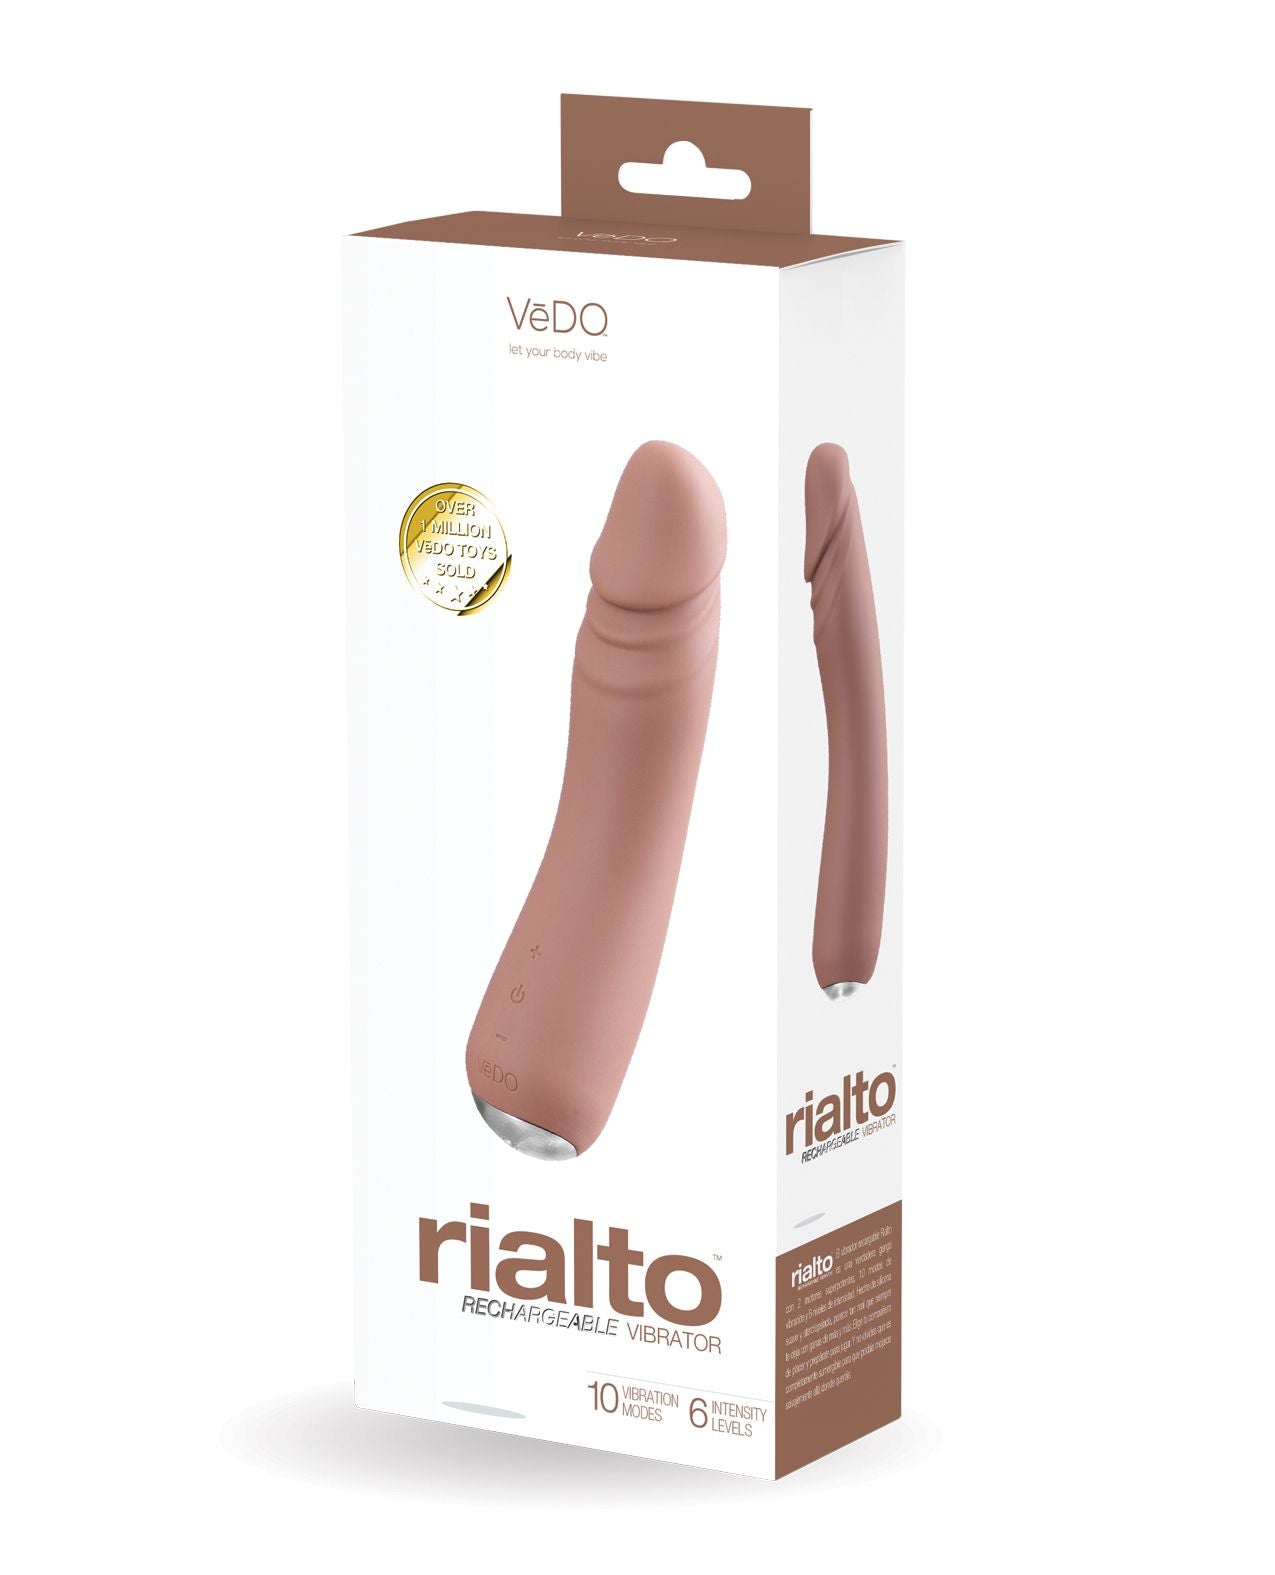 VeDO Rialto Realistic Vibrator in its box (caramel).